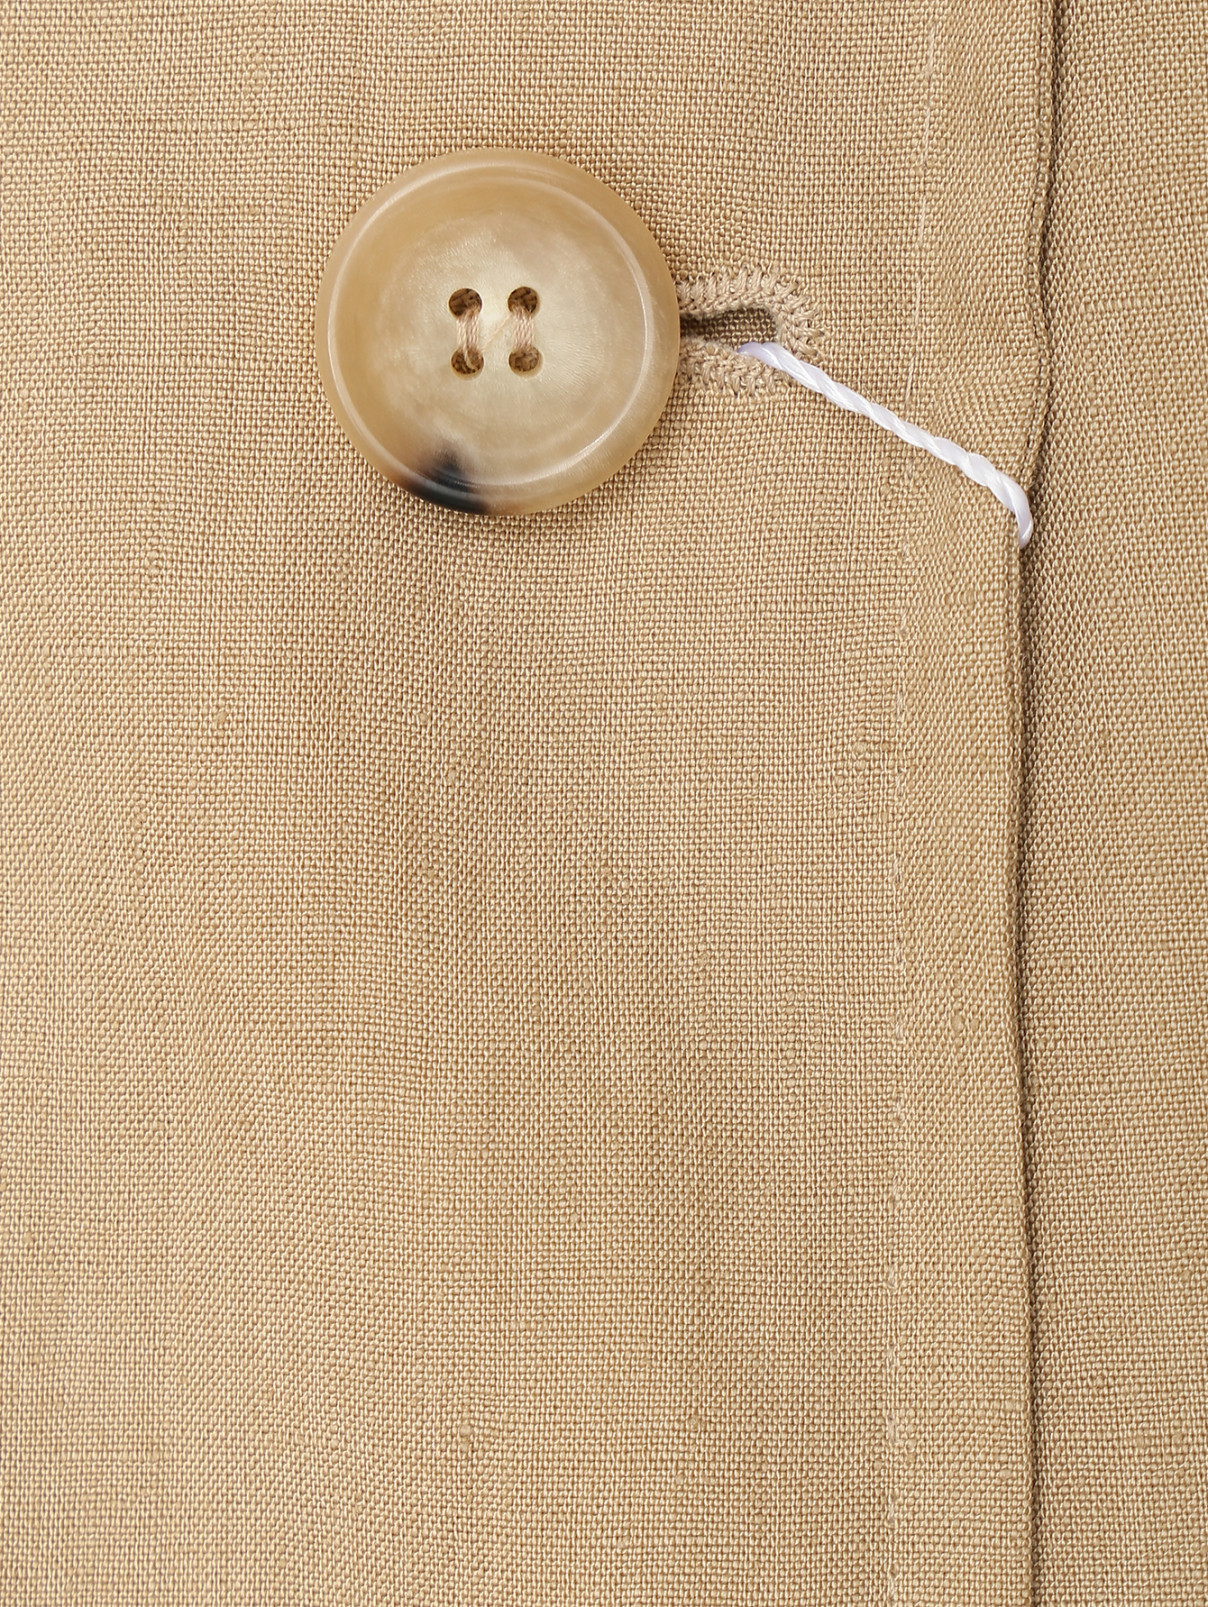 Двубортное пальто изо льна с карманами Max Mara  –  Деталь  – Цвет:  Бежевый